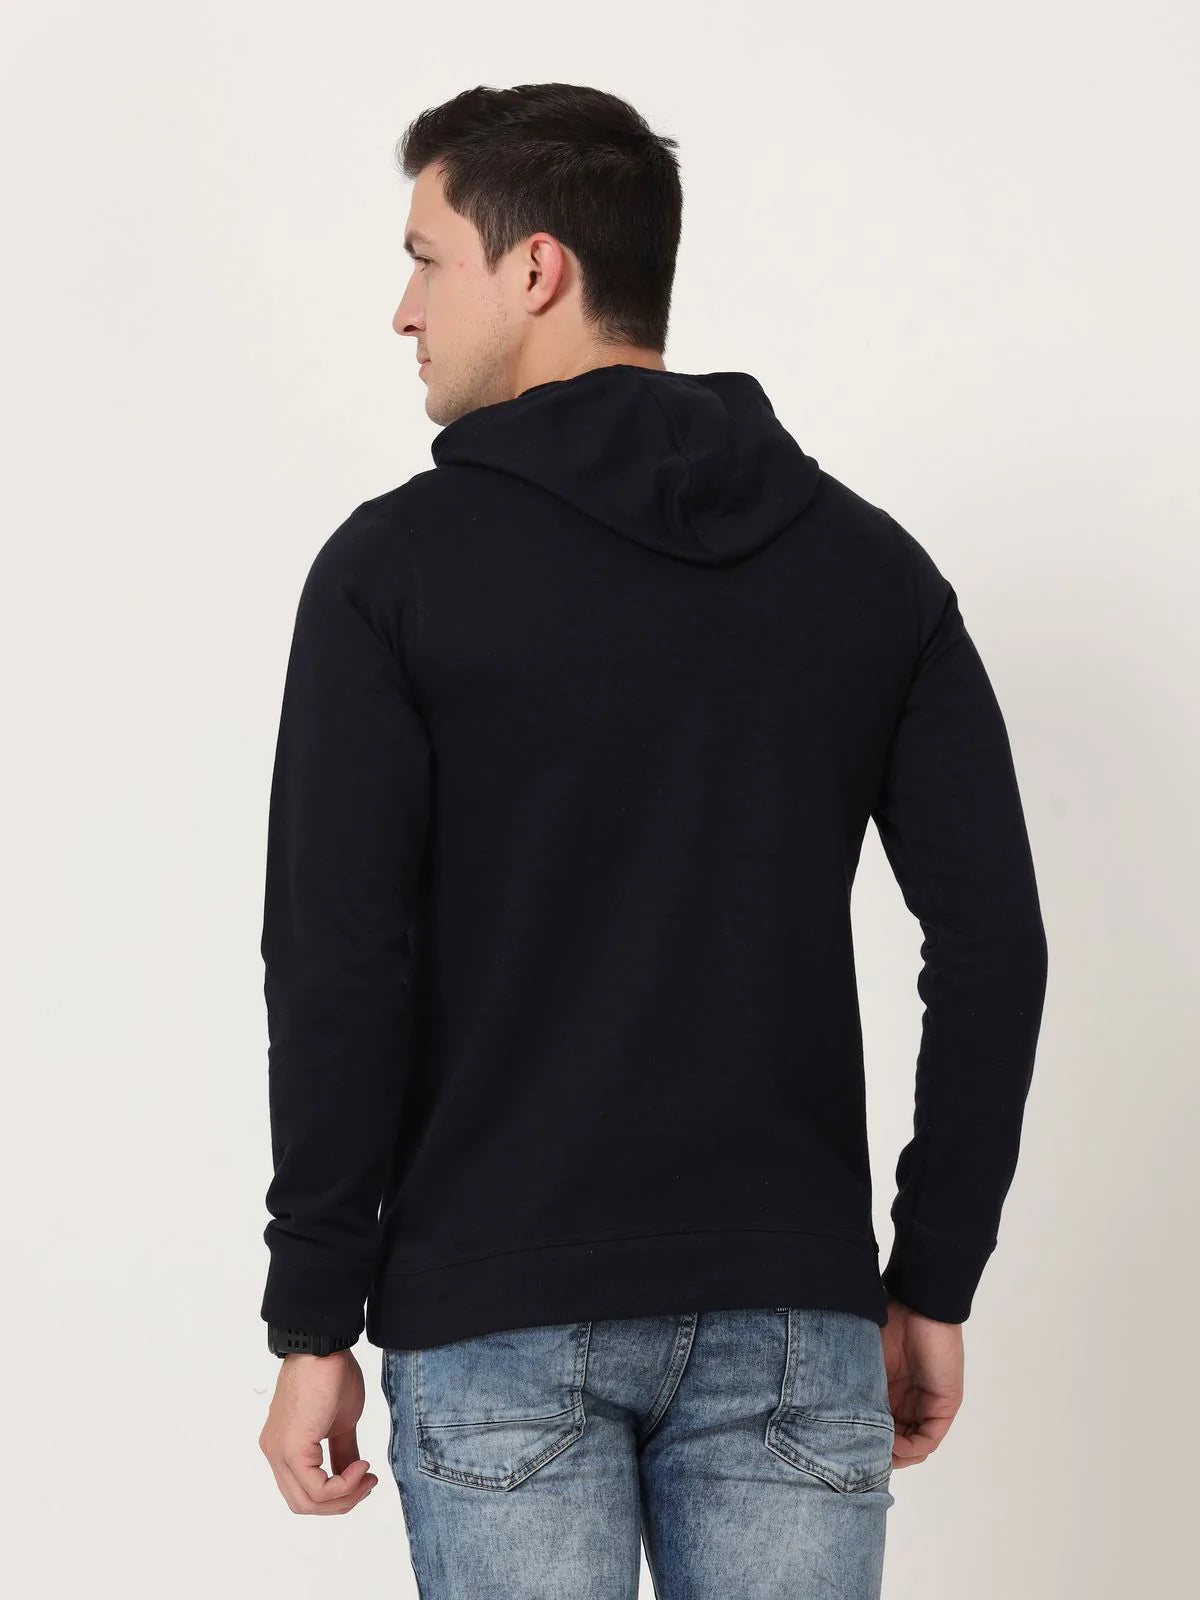 Fleximaa Men's Cotton Hooded Neck Plain Sweatshirt/Hoodies